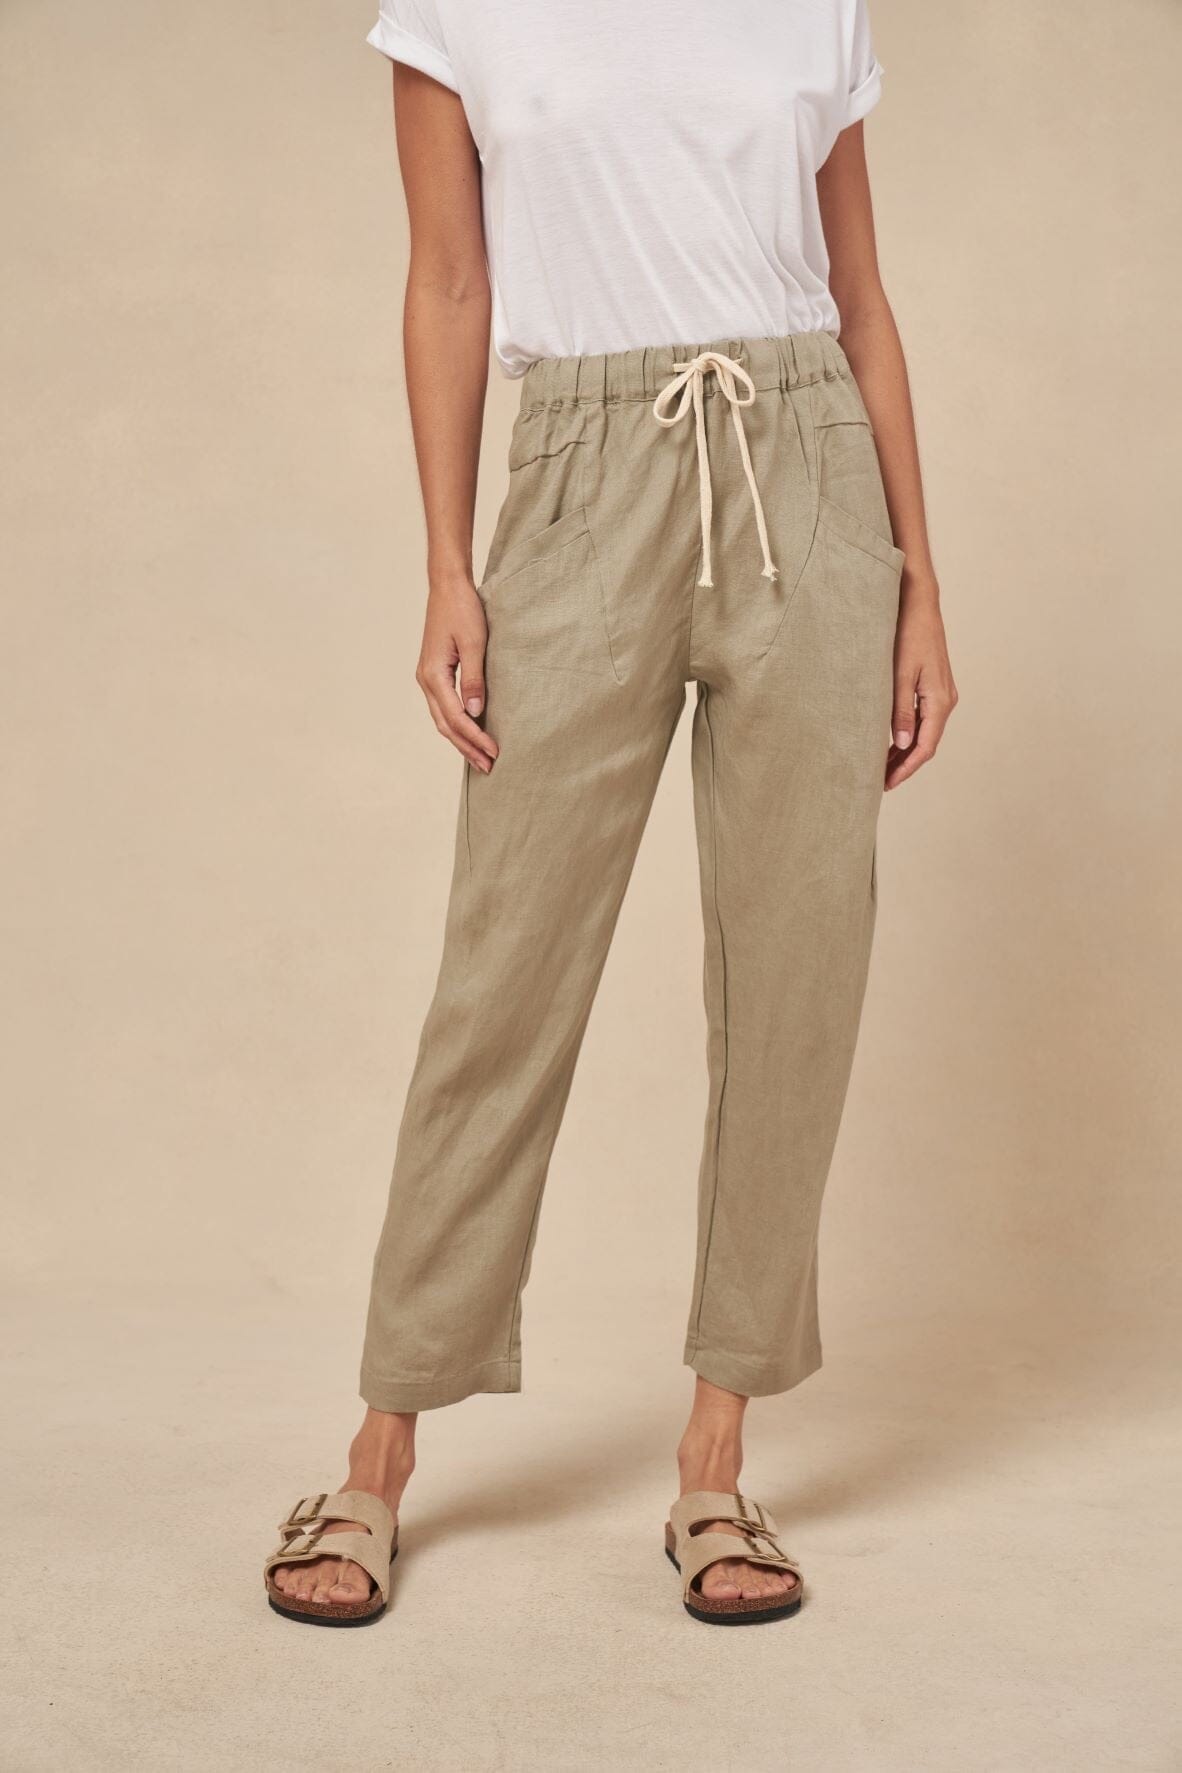 LITTLE LIES Luxe Linen Pants - Khaki BOTTOMS